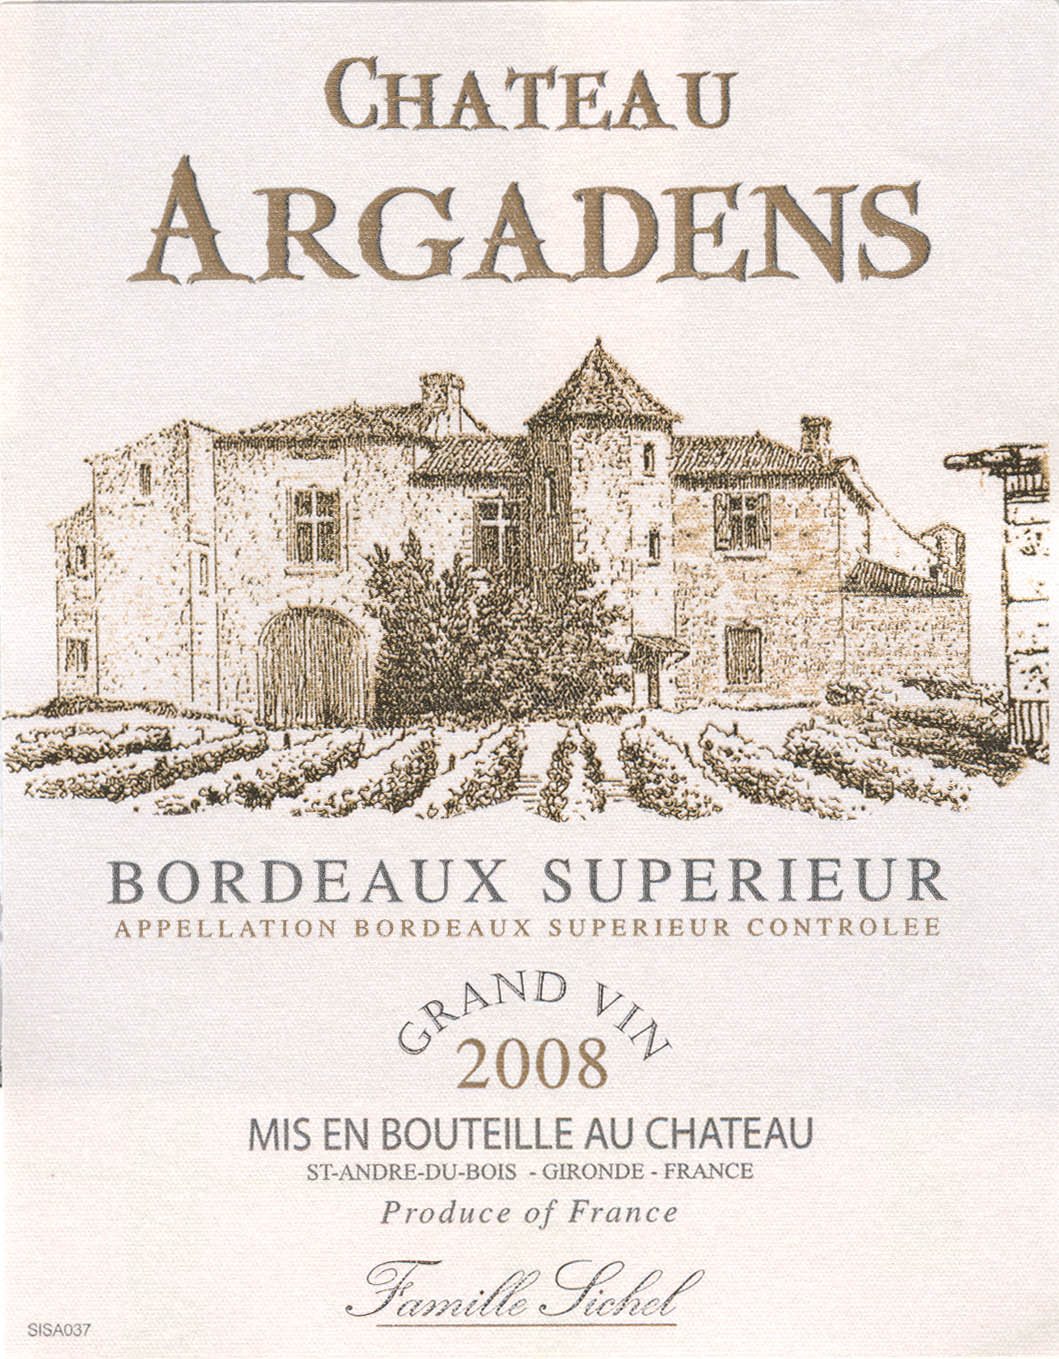 샤토 아가든스 Château Argadens AOC 보르도 쉬페리외르Bordeaux Supérieur 레드 Red 2008